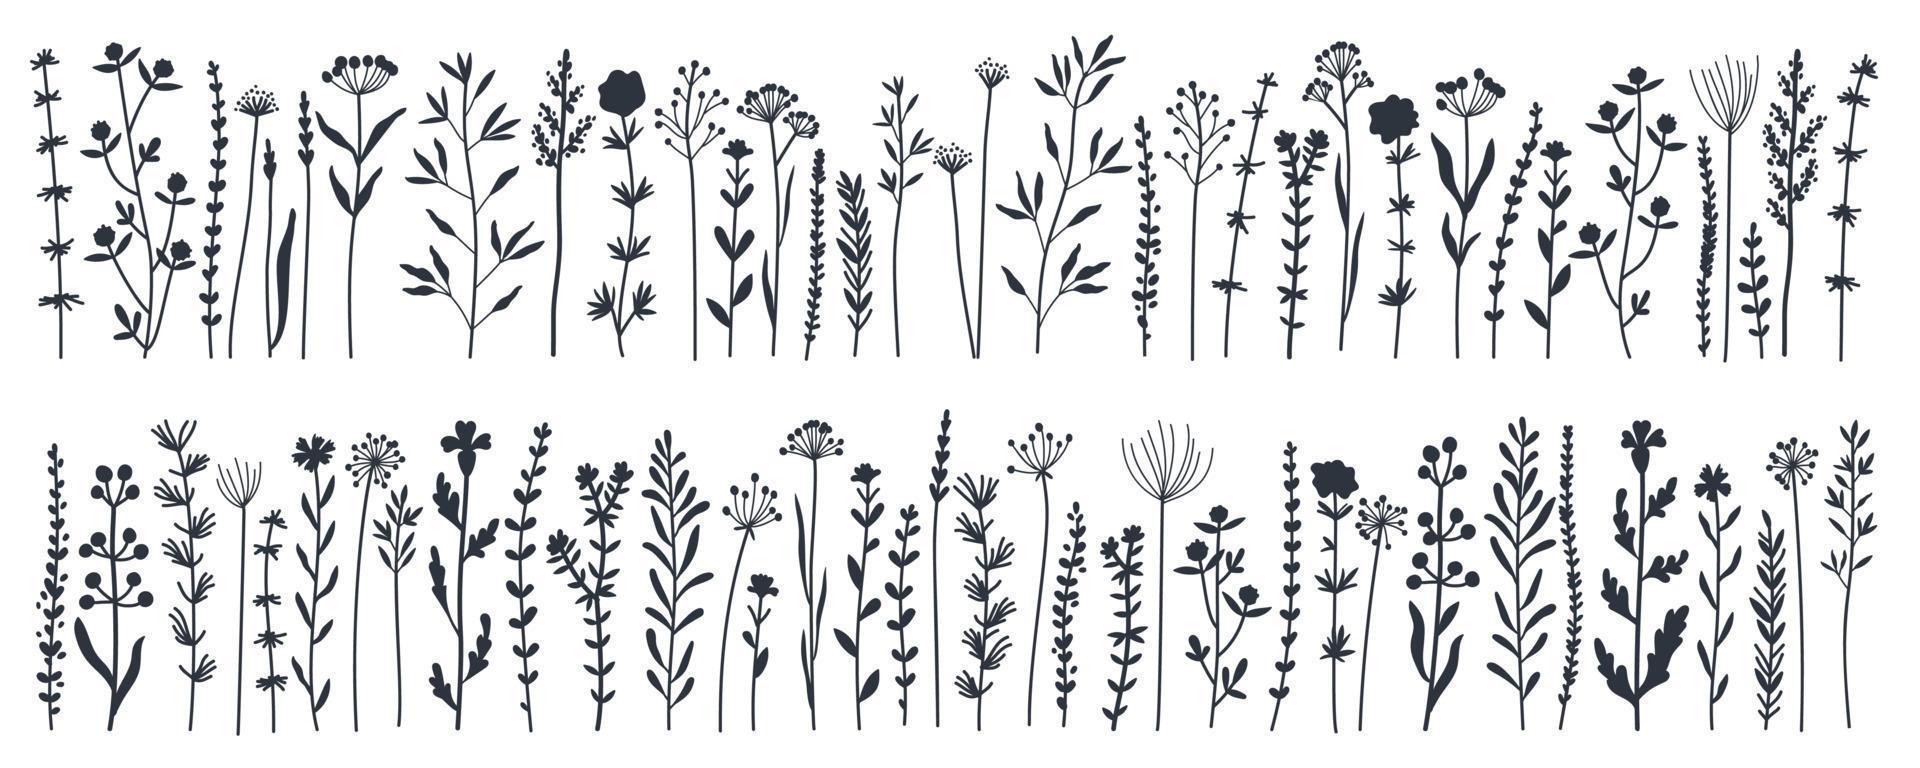 zwarte silhouetten tuin en wild gebladerte, bloemen, takken vector illustratie